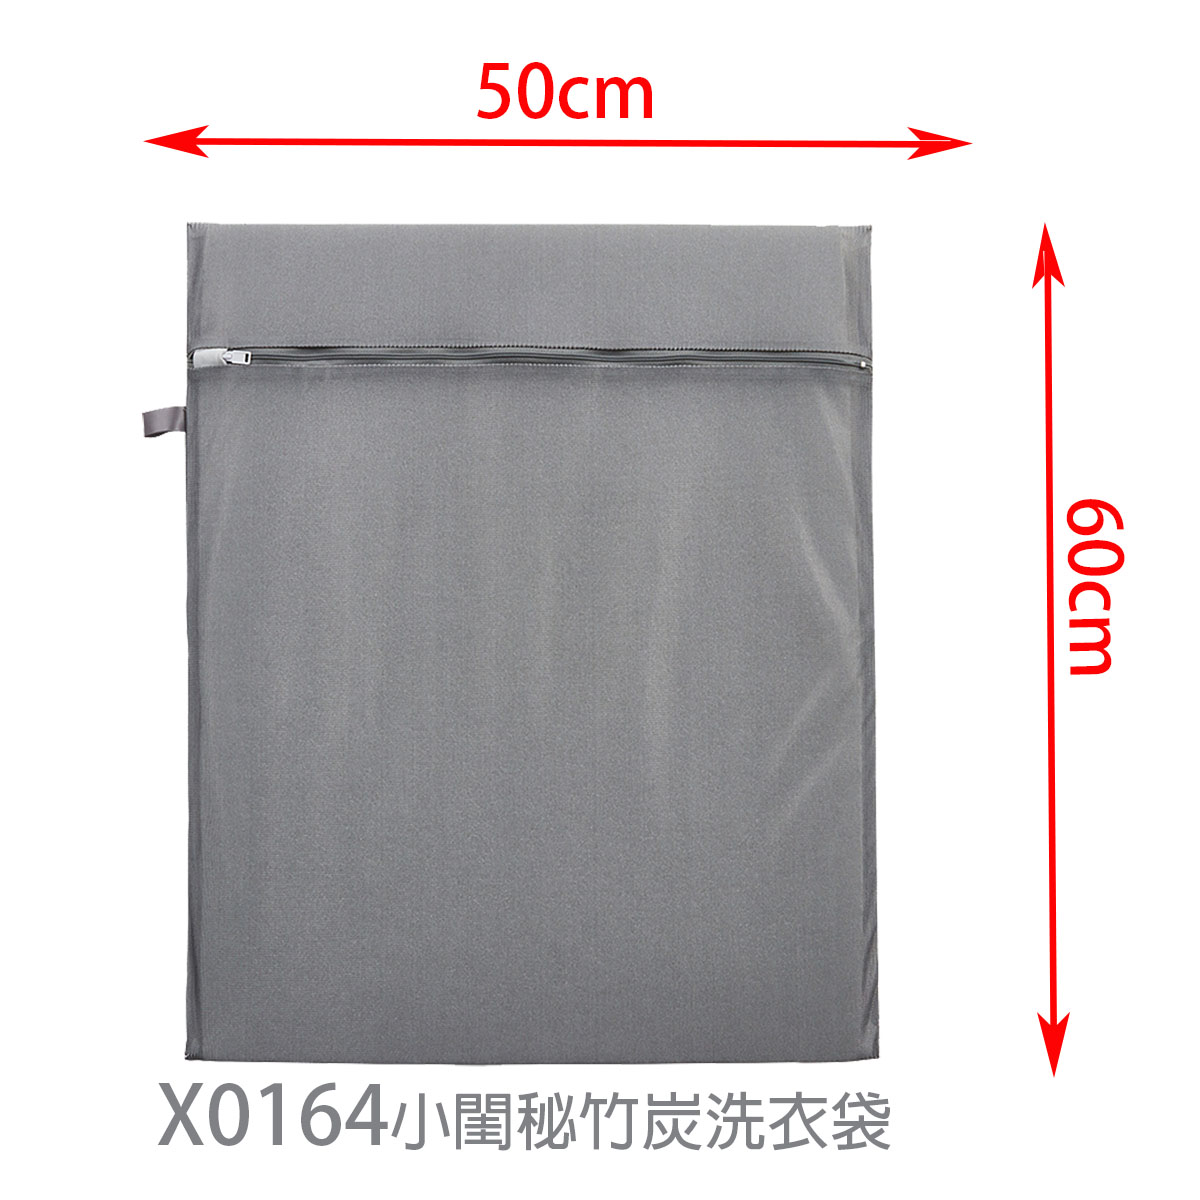 X0164小閨秘竹炭洗衣袋方型50x60cm